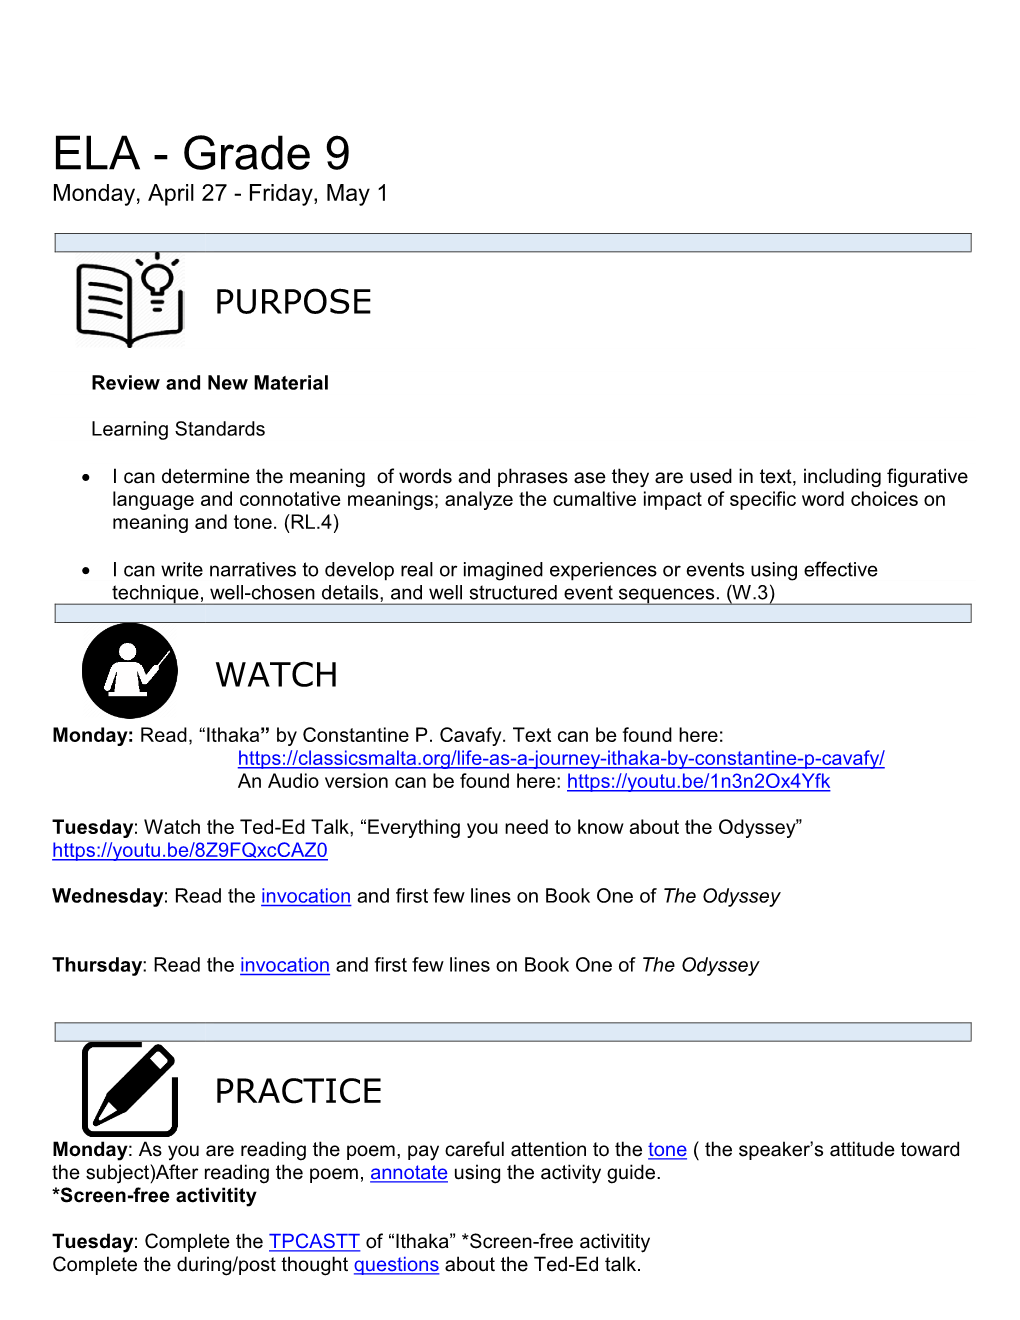 ELA - Grade 9 Monday, April 27 - Friday, May 1